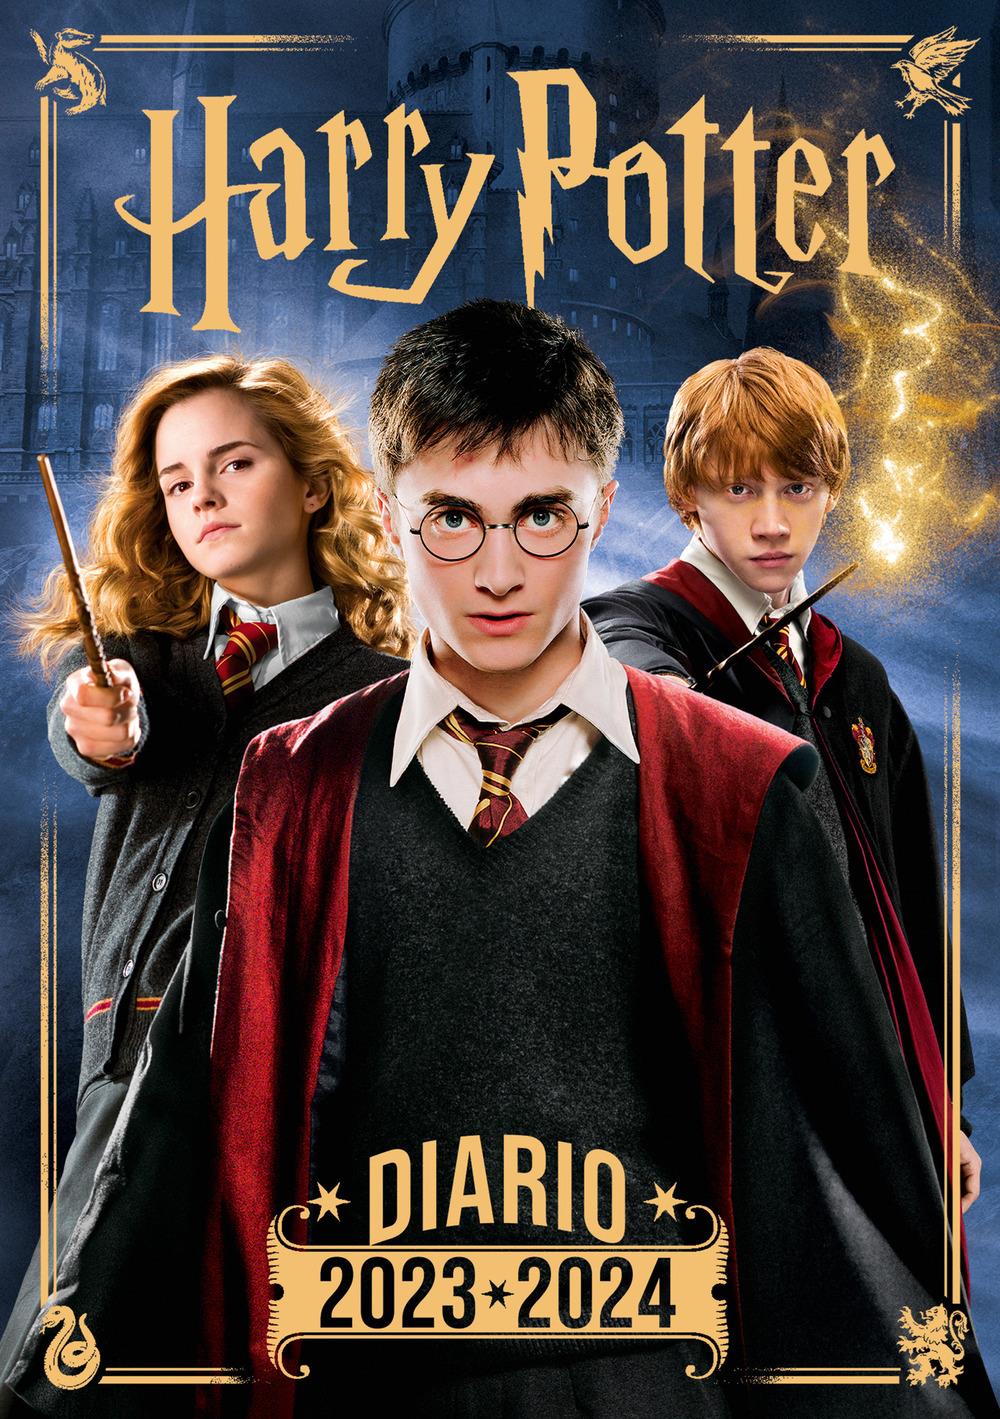 Diario di Harry Potter 2023-2024. Agenda scolastica giornaliera. Prodotto  ufficiale